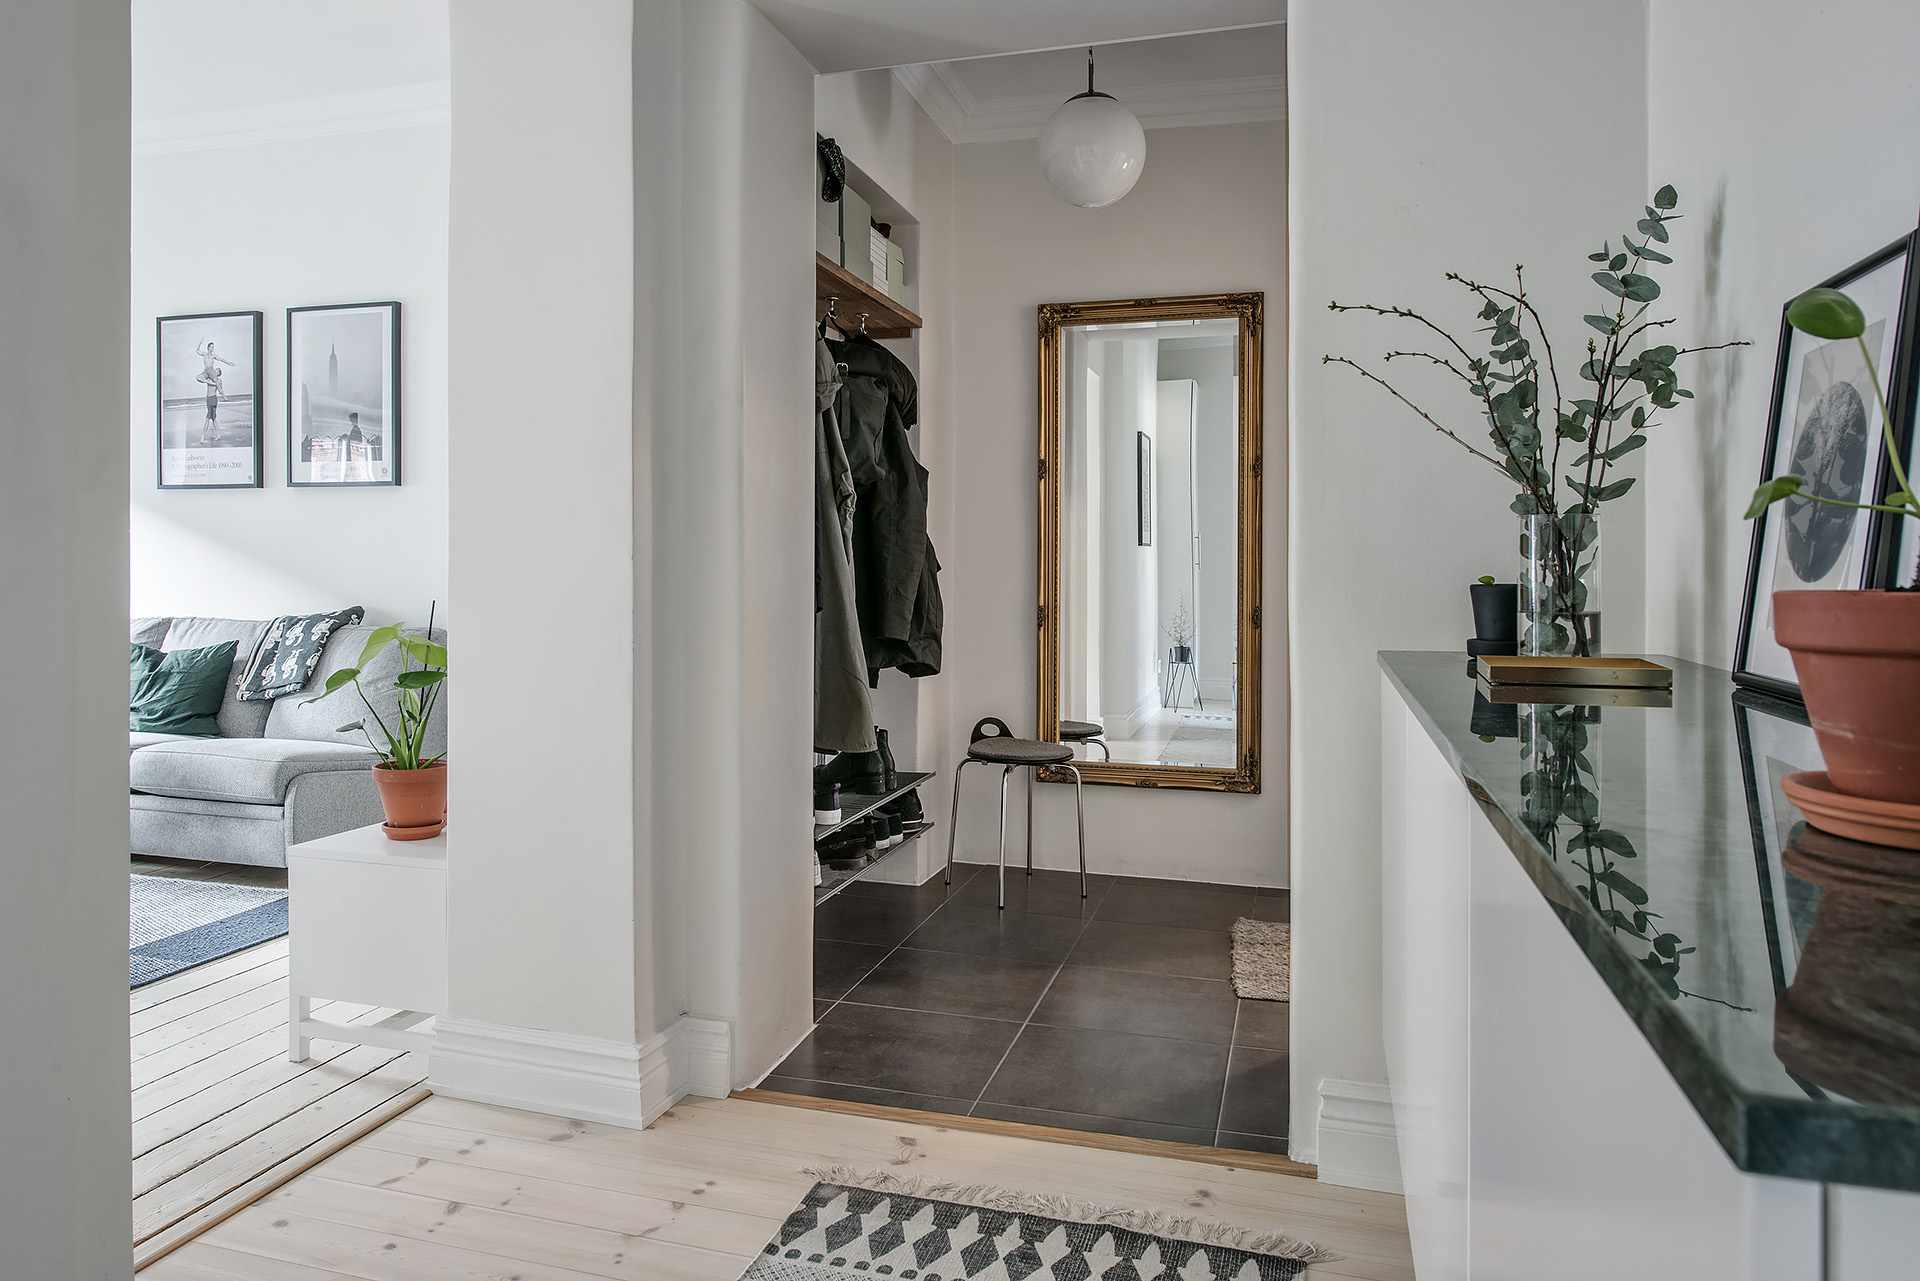 Прихожая в квартире - выберите минималистский скандинавский стиль